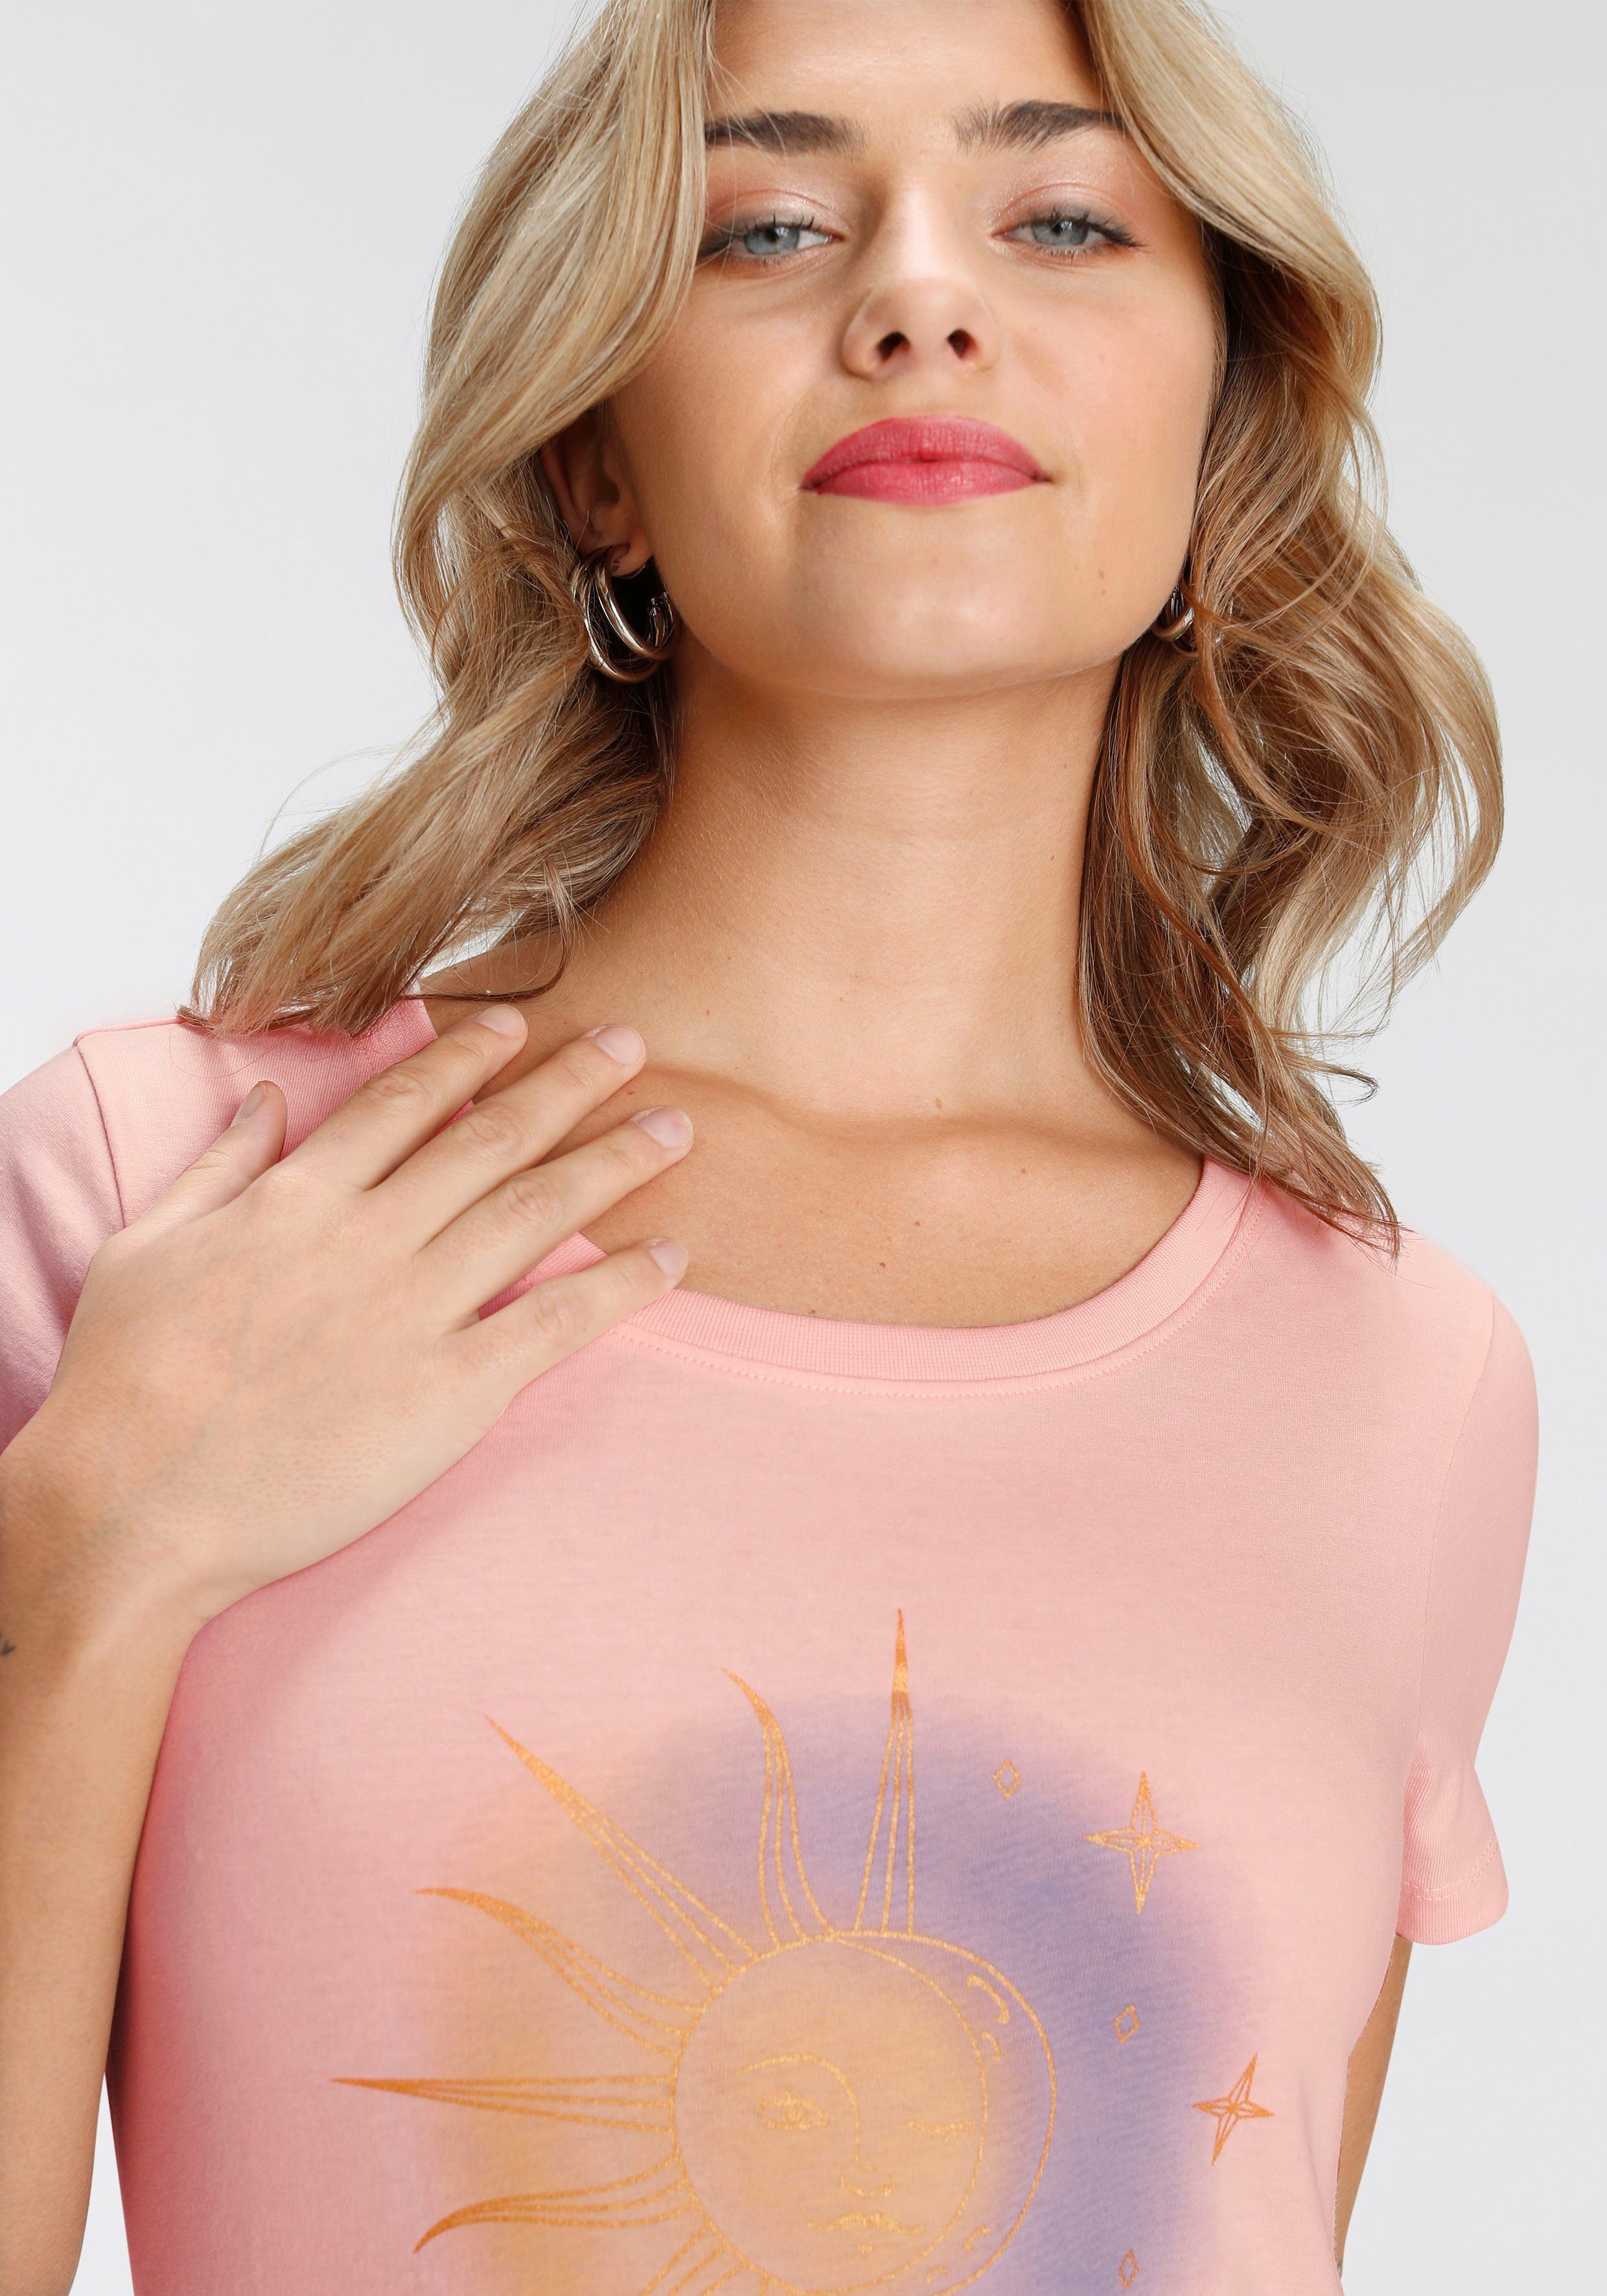 Print-Shirt in rosa verschiedenen modischen AJC Designs